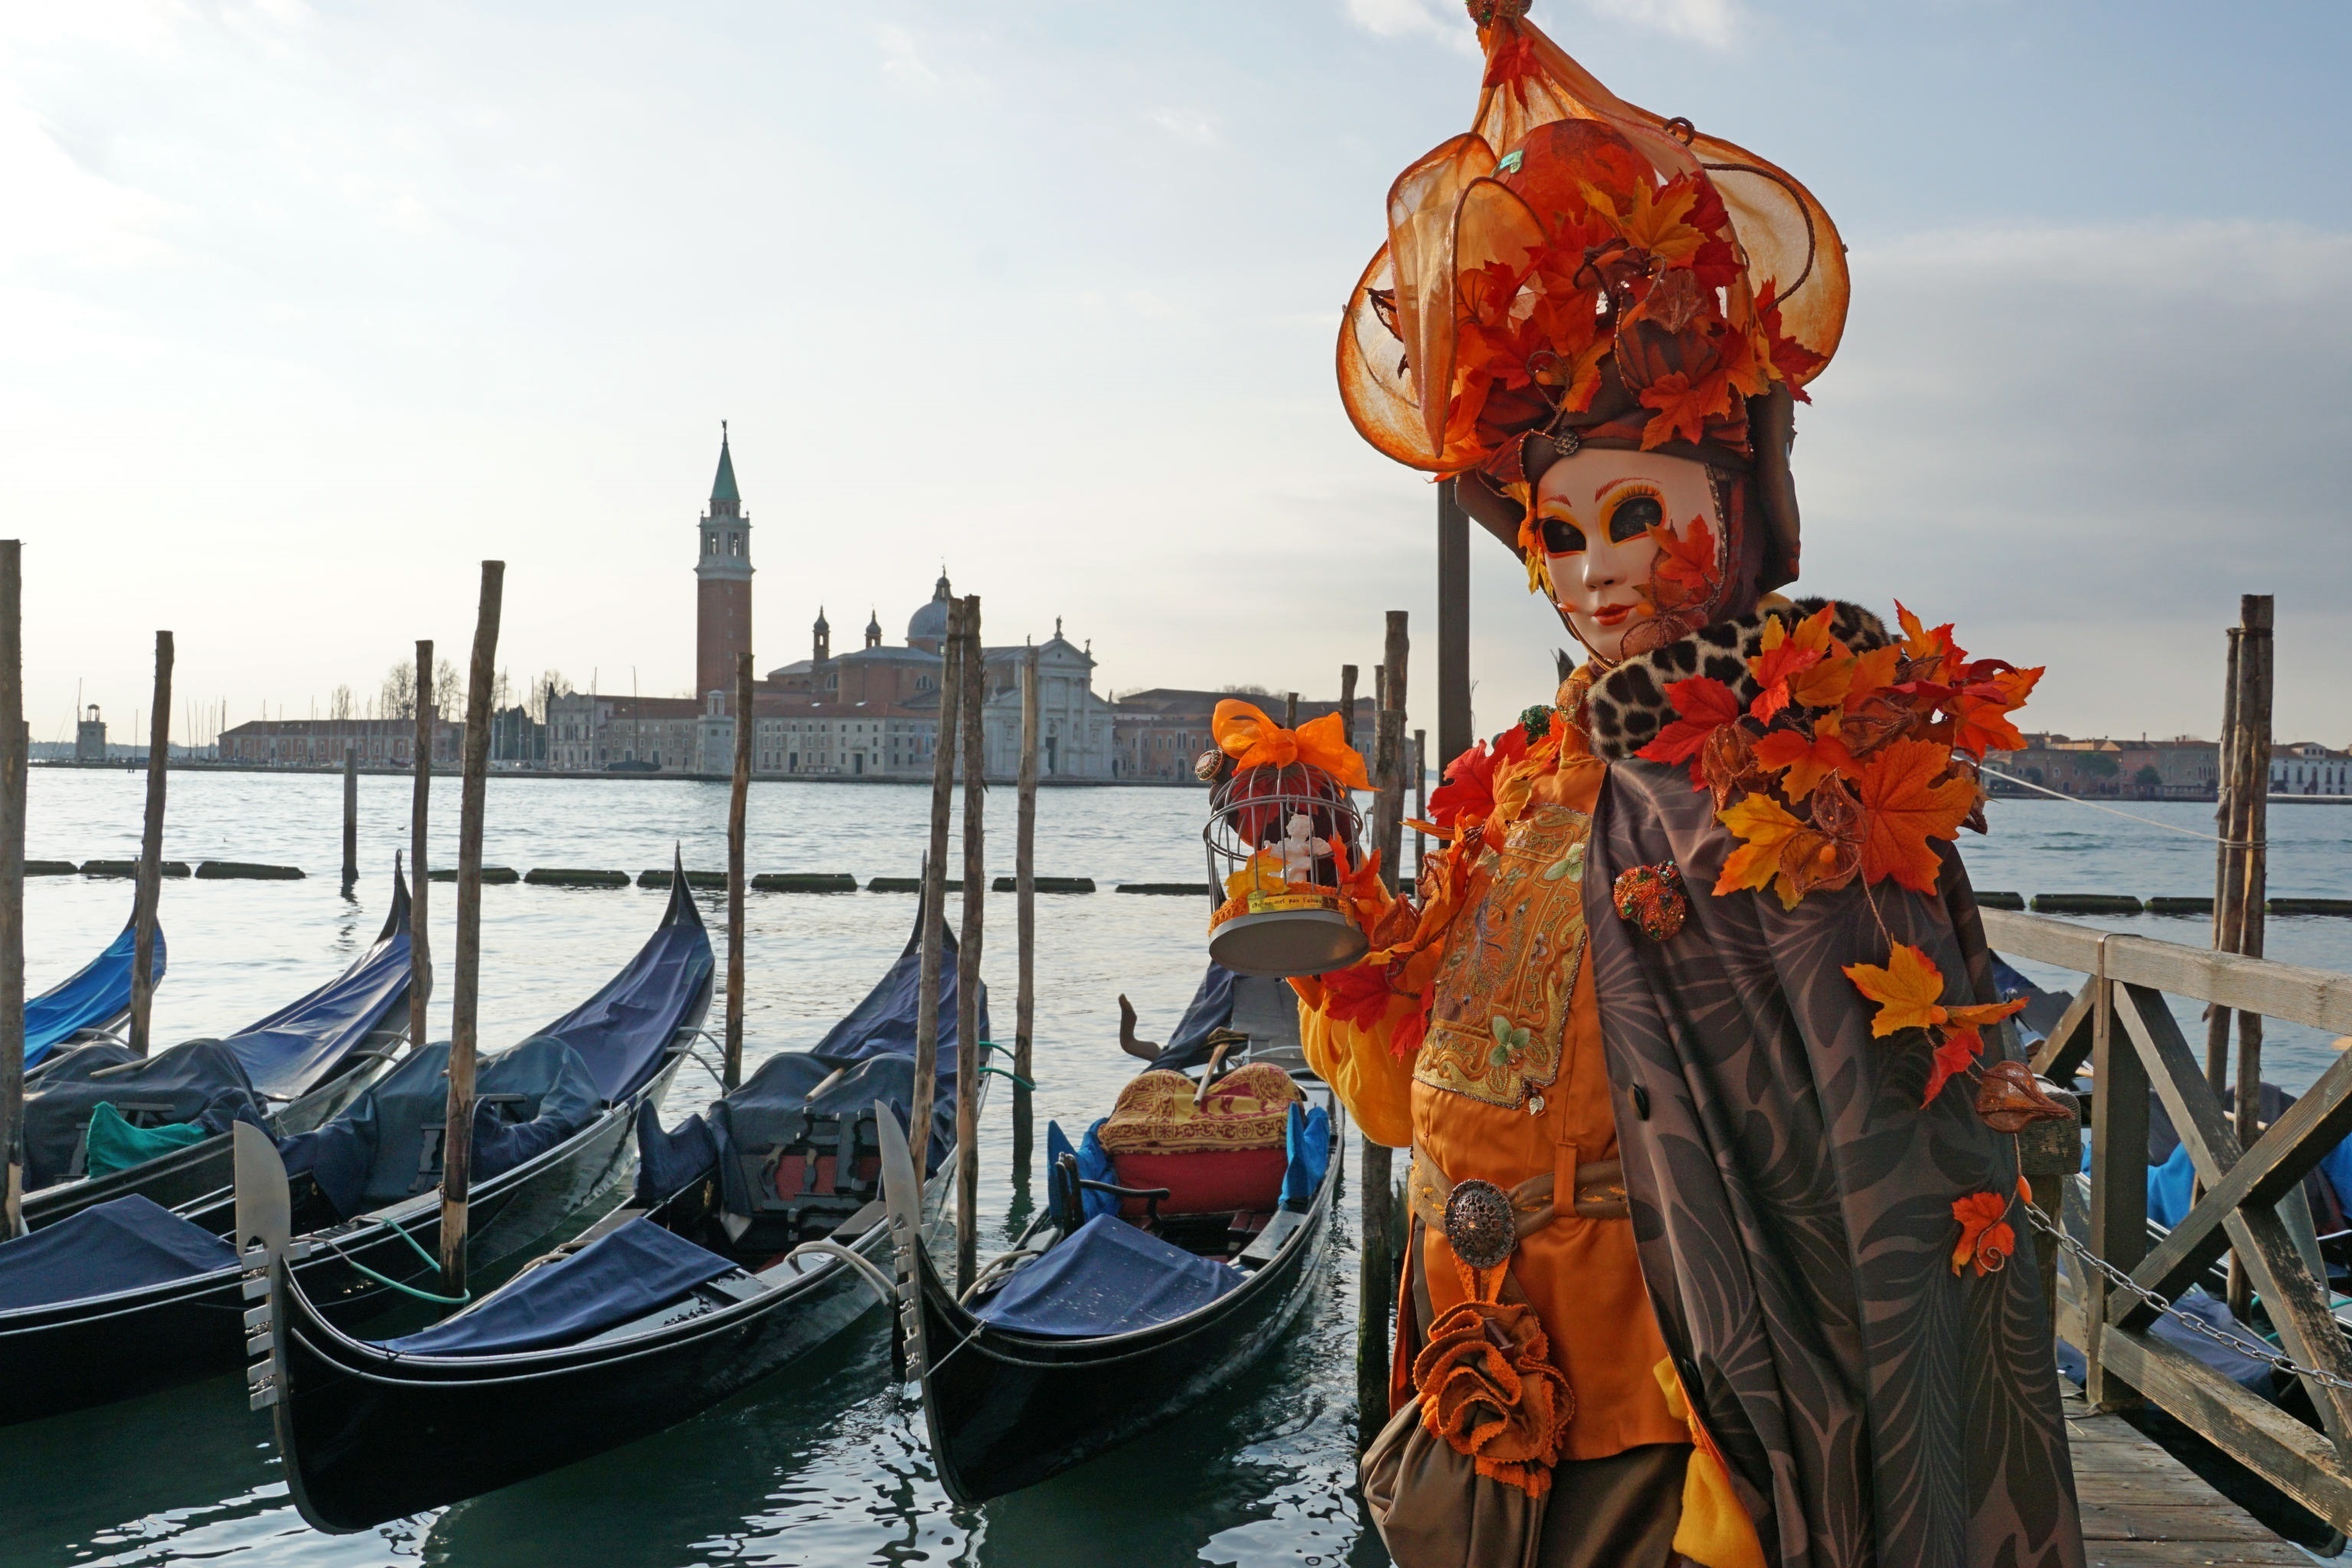 Una persona disfrazada en el Carnaval de Venecia